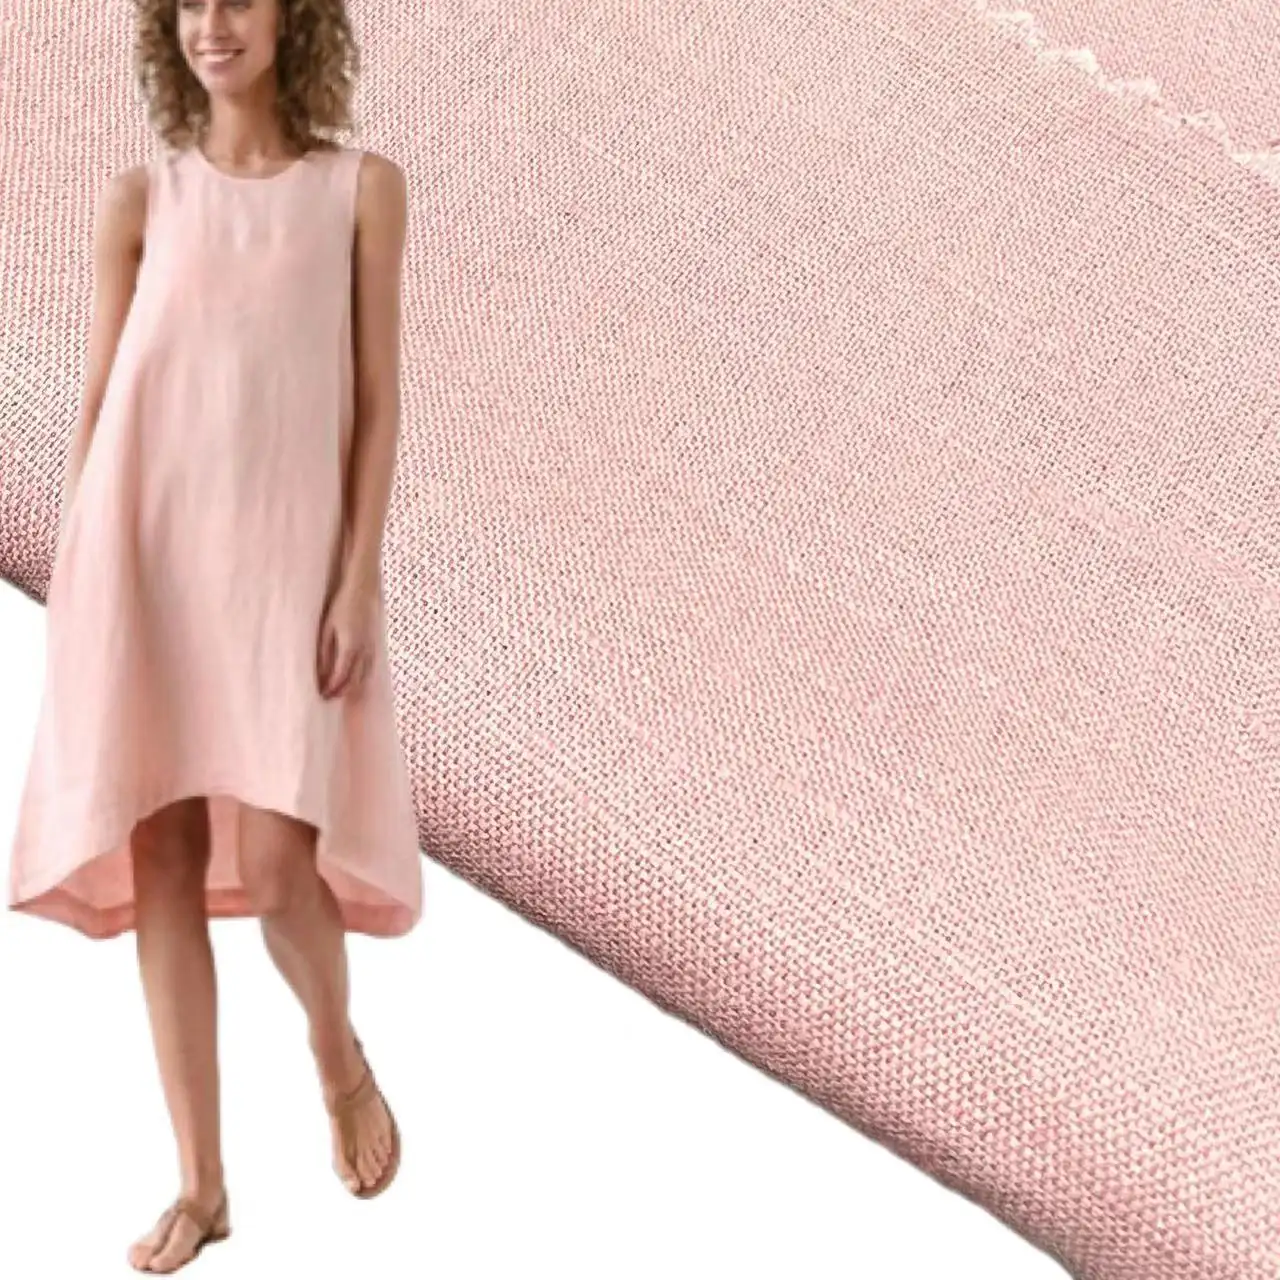 China manufacturer plain dye 165gsm hemp cotton linen blends fabric for dress shirts blouse